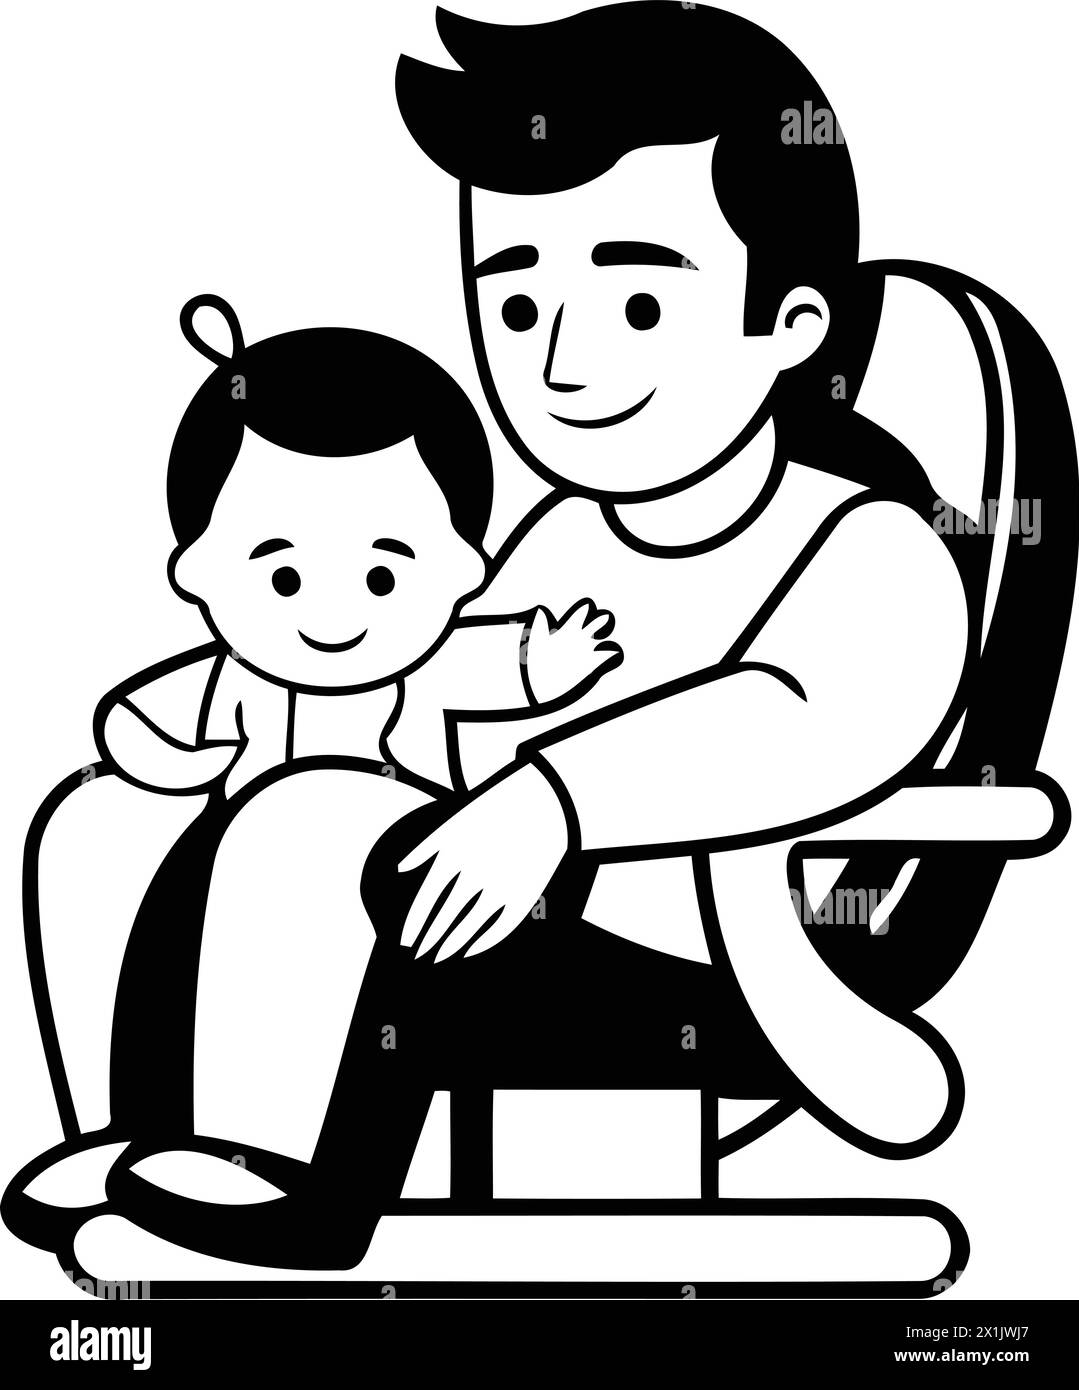 Père et fils assis dans la chaise. illustration vectorielle de dessin animé. Paternité et concept de famille. Illustration de Vecteur